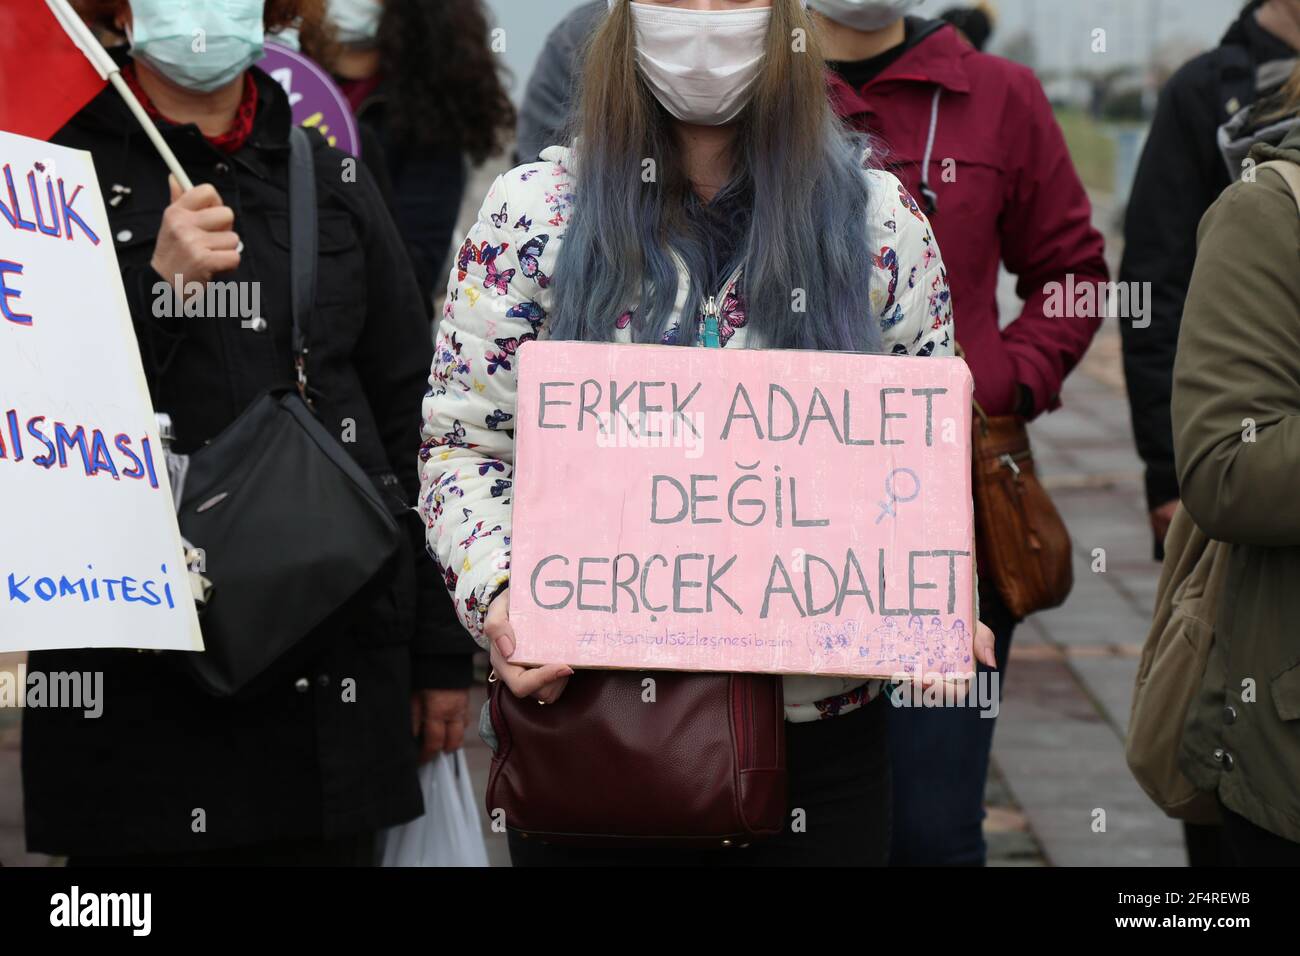 Izmir, Türkei - 03-20-2021: Gegen die Entscheidung der Regierung, sich aus der "Istanbul-Konvention" zurückzuziehen, wurde protestiert. Die Demonstranten versammelten sich unter dem Holzschlog Stockfoto